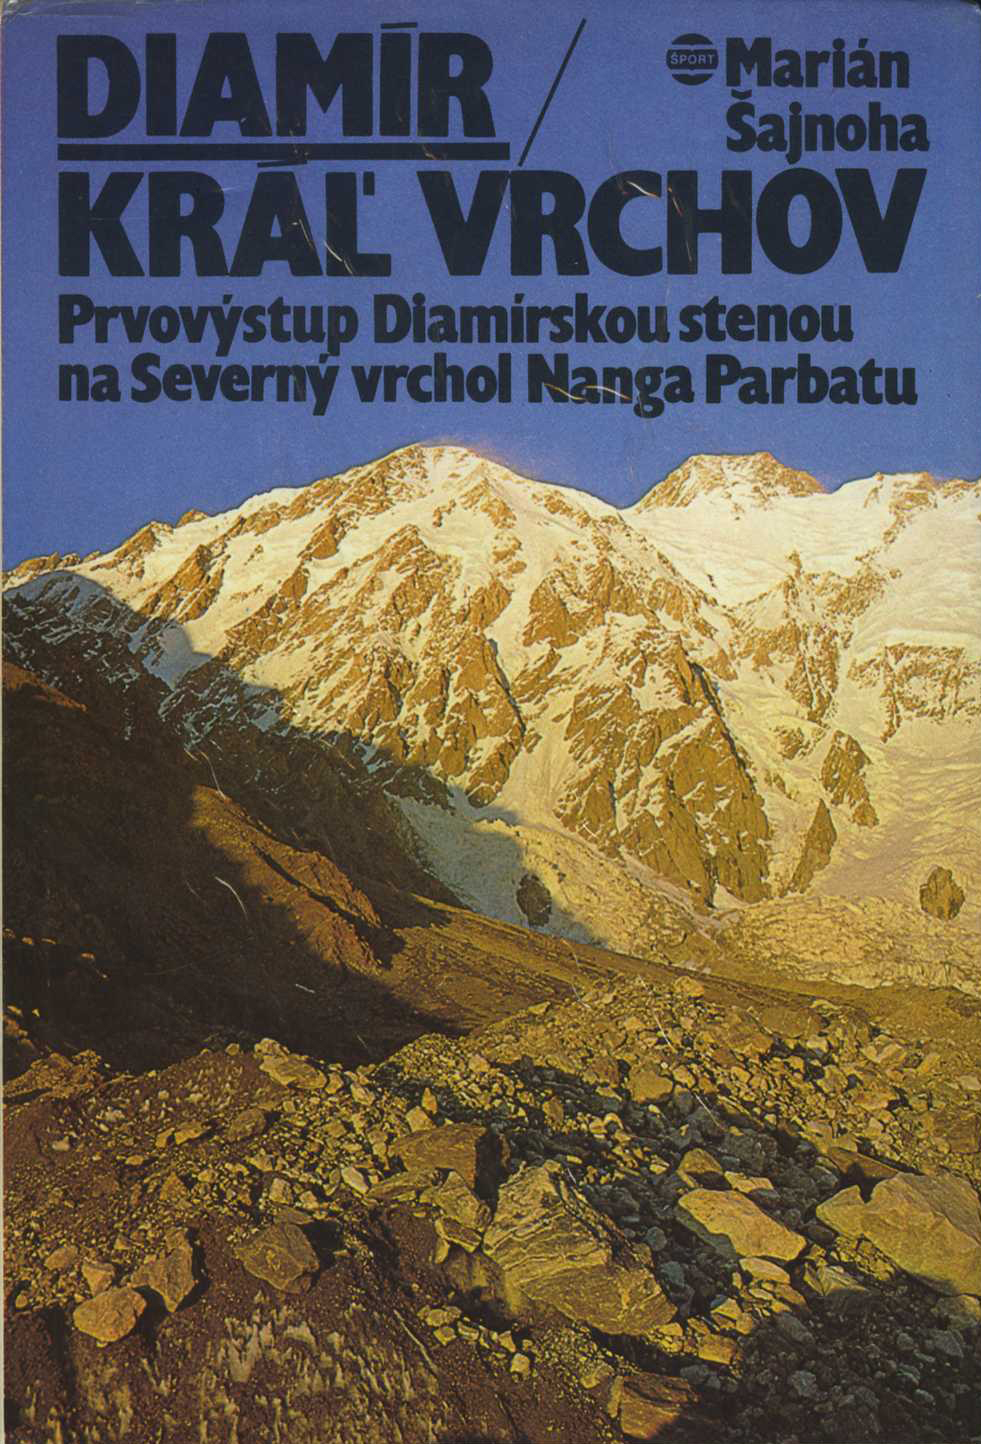 Diamír - Kráľ vrchov (Marián Šajnoha)